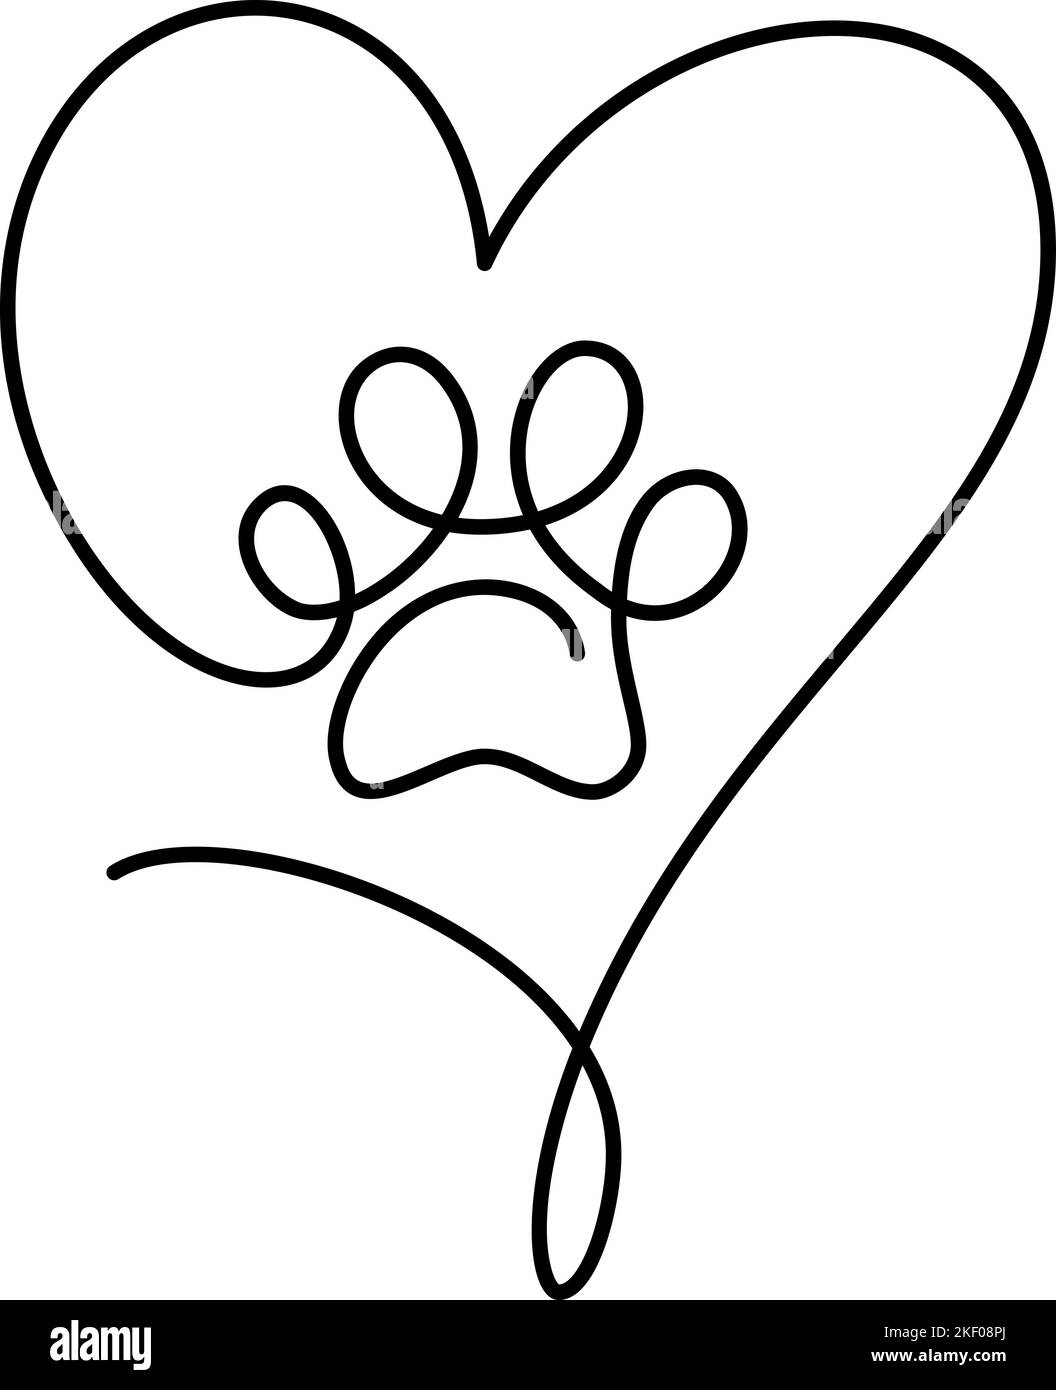 Katze oder Hund Pfote mit großem Herzen in kontinuierliche einzeilige Zeichnung Logo. Minimal Line Art. Tierdruck im Rahmen. PET Love-Konzept Stock Vektor